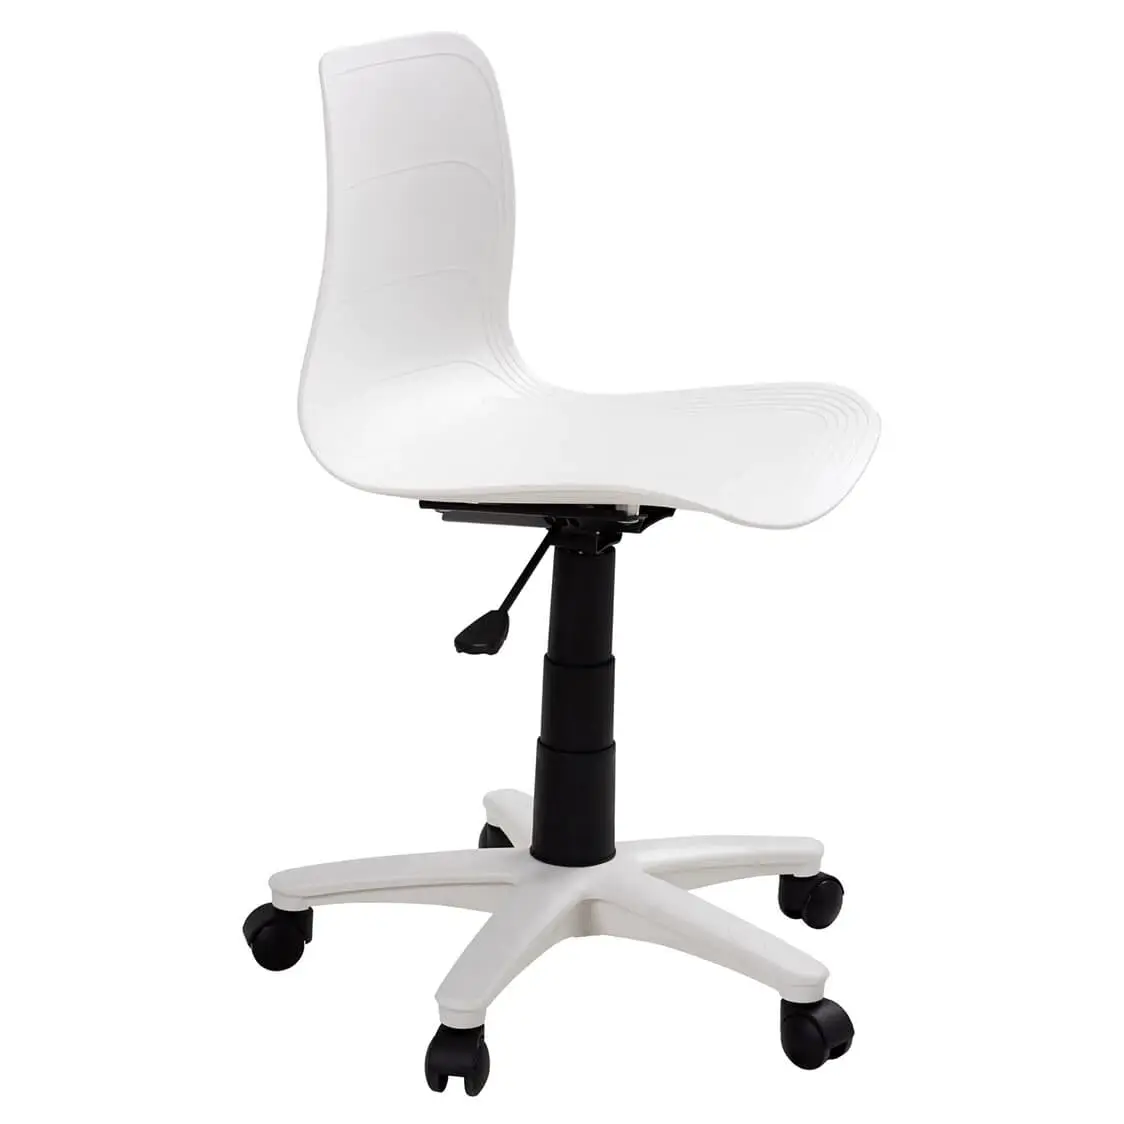 SMA Furniture - Chuyên cung cấp ghế xoay màu trắng chất lượng, giá cả cạnh tranh